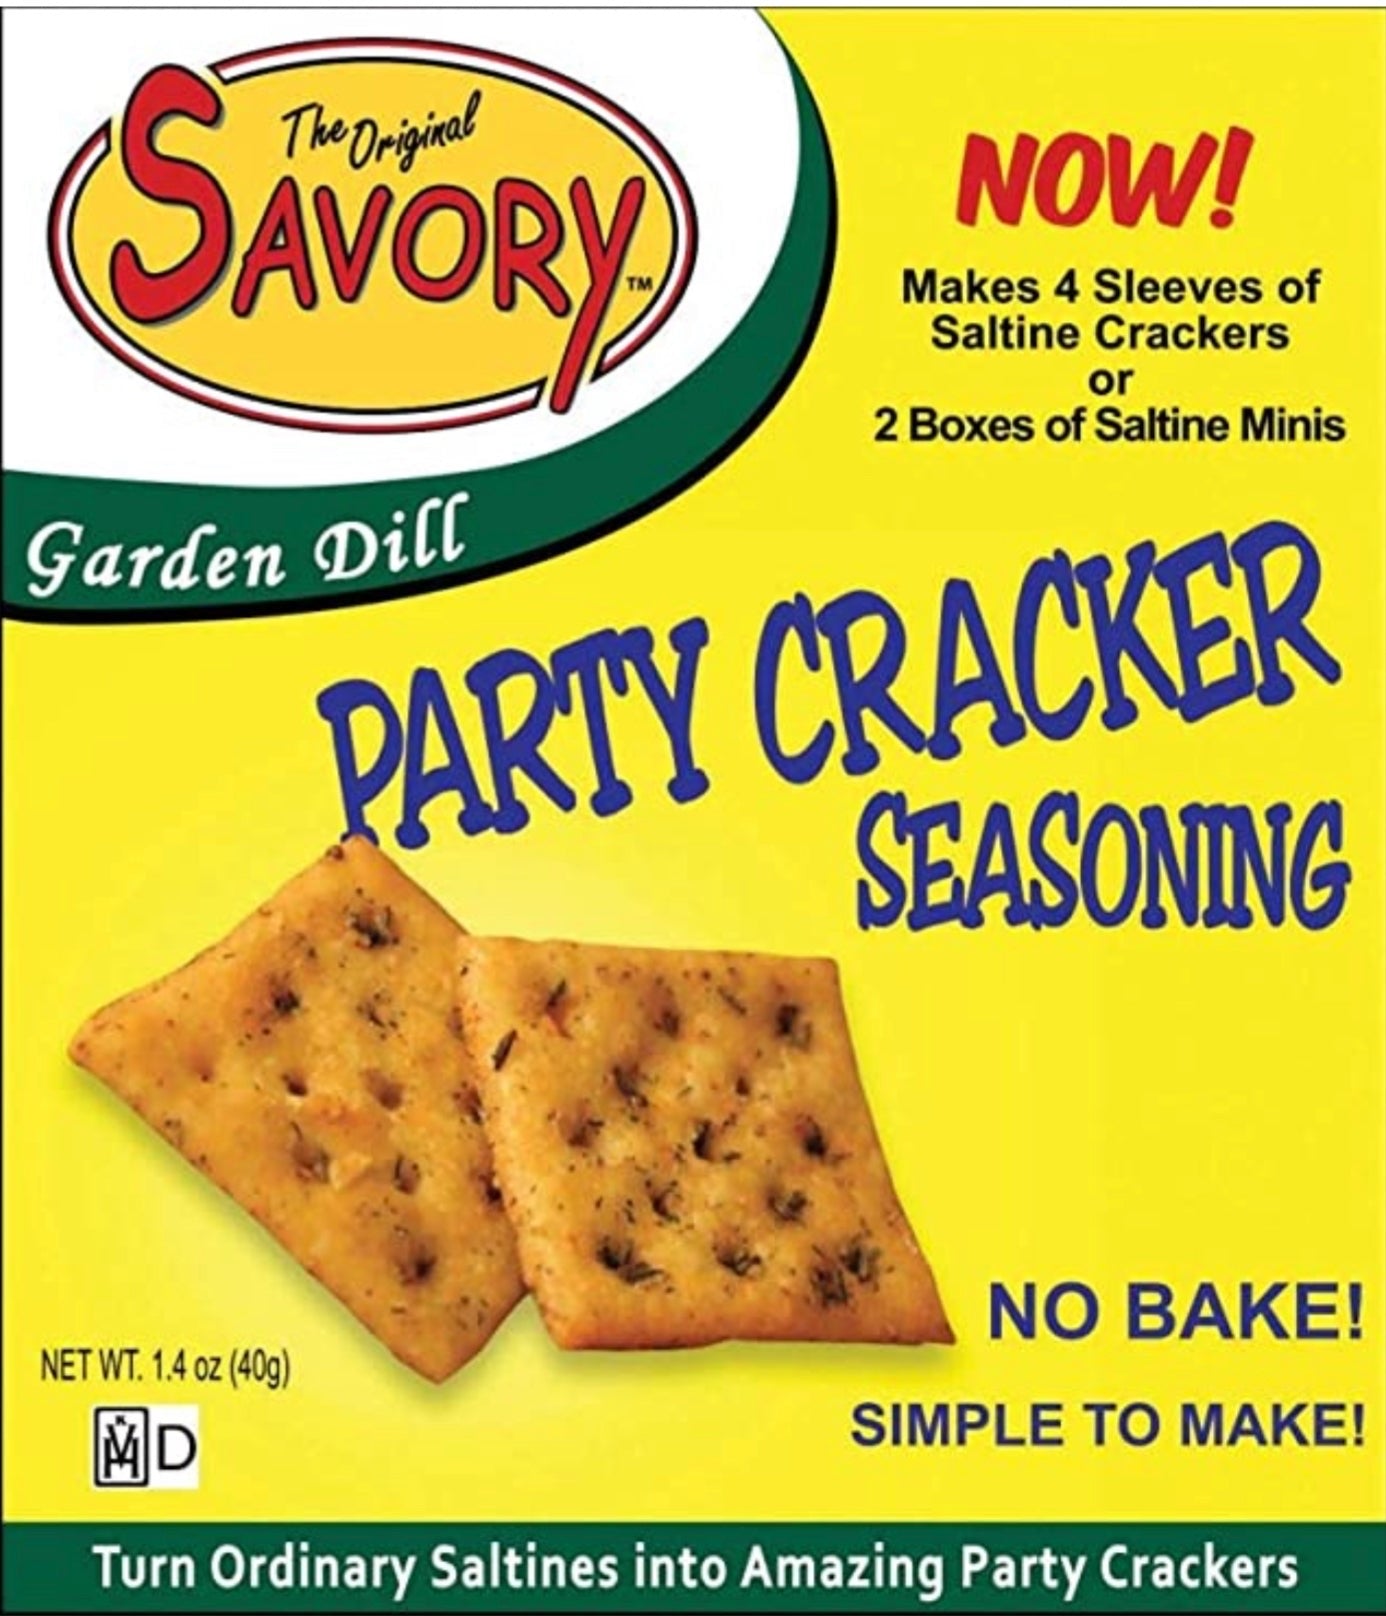 SAVORY Party Cracker Seasonings